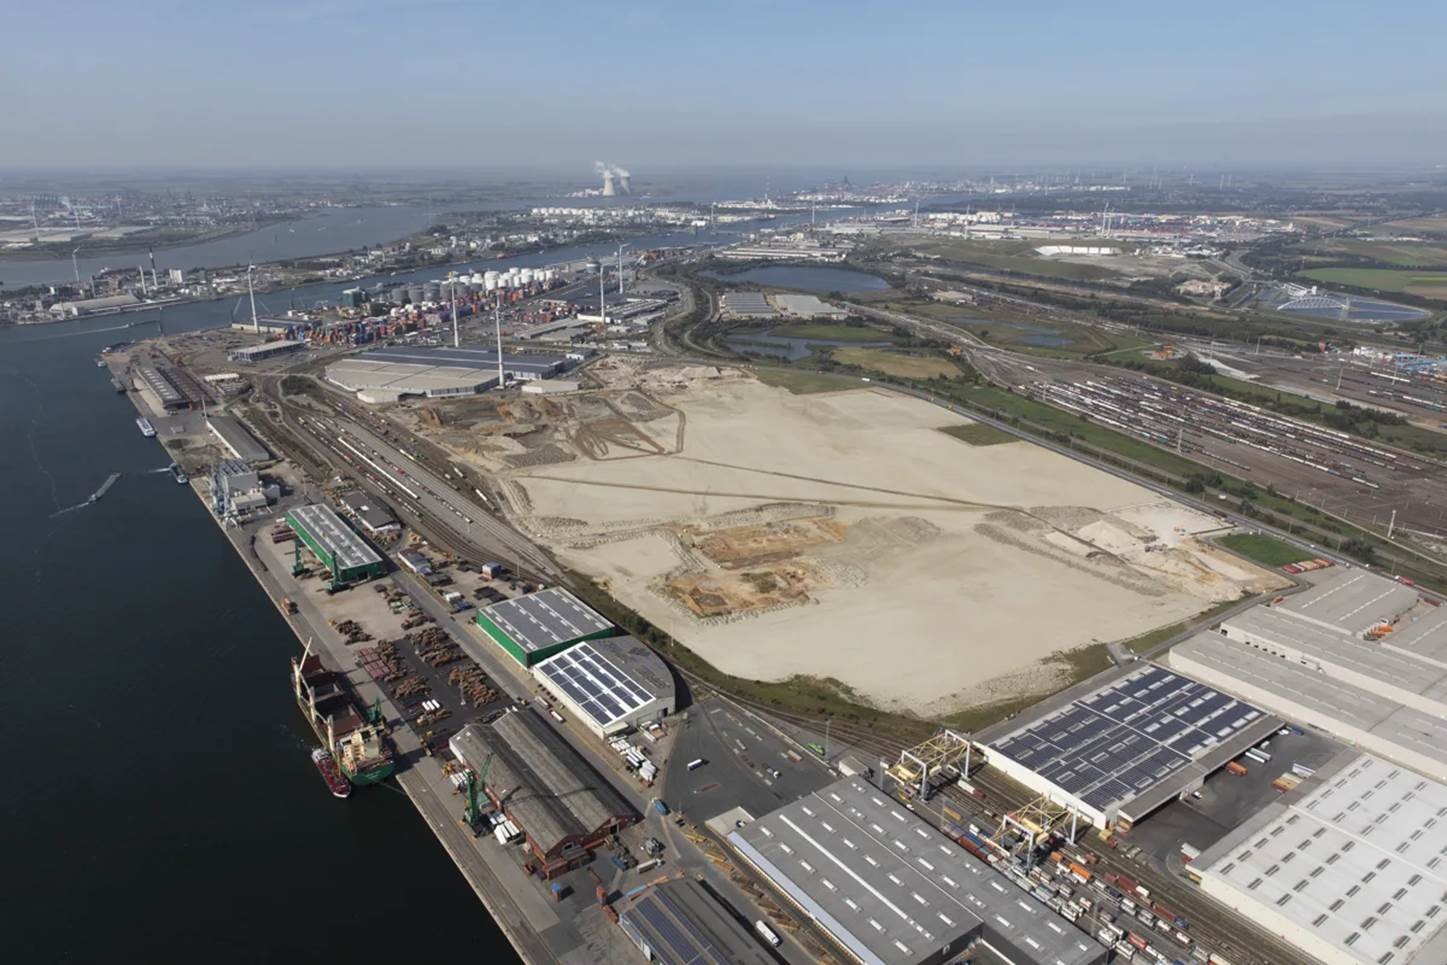 Port of Antwerp NextGen District